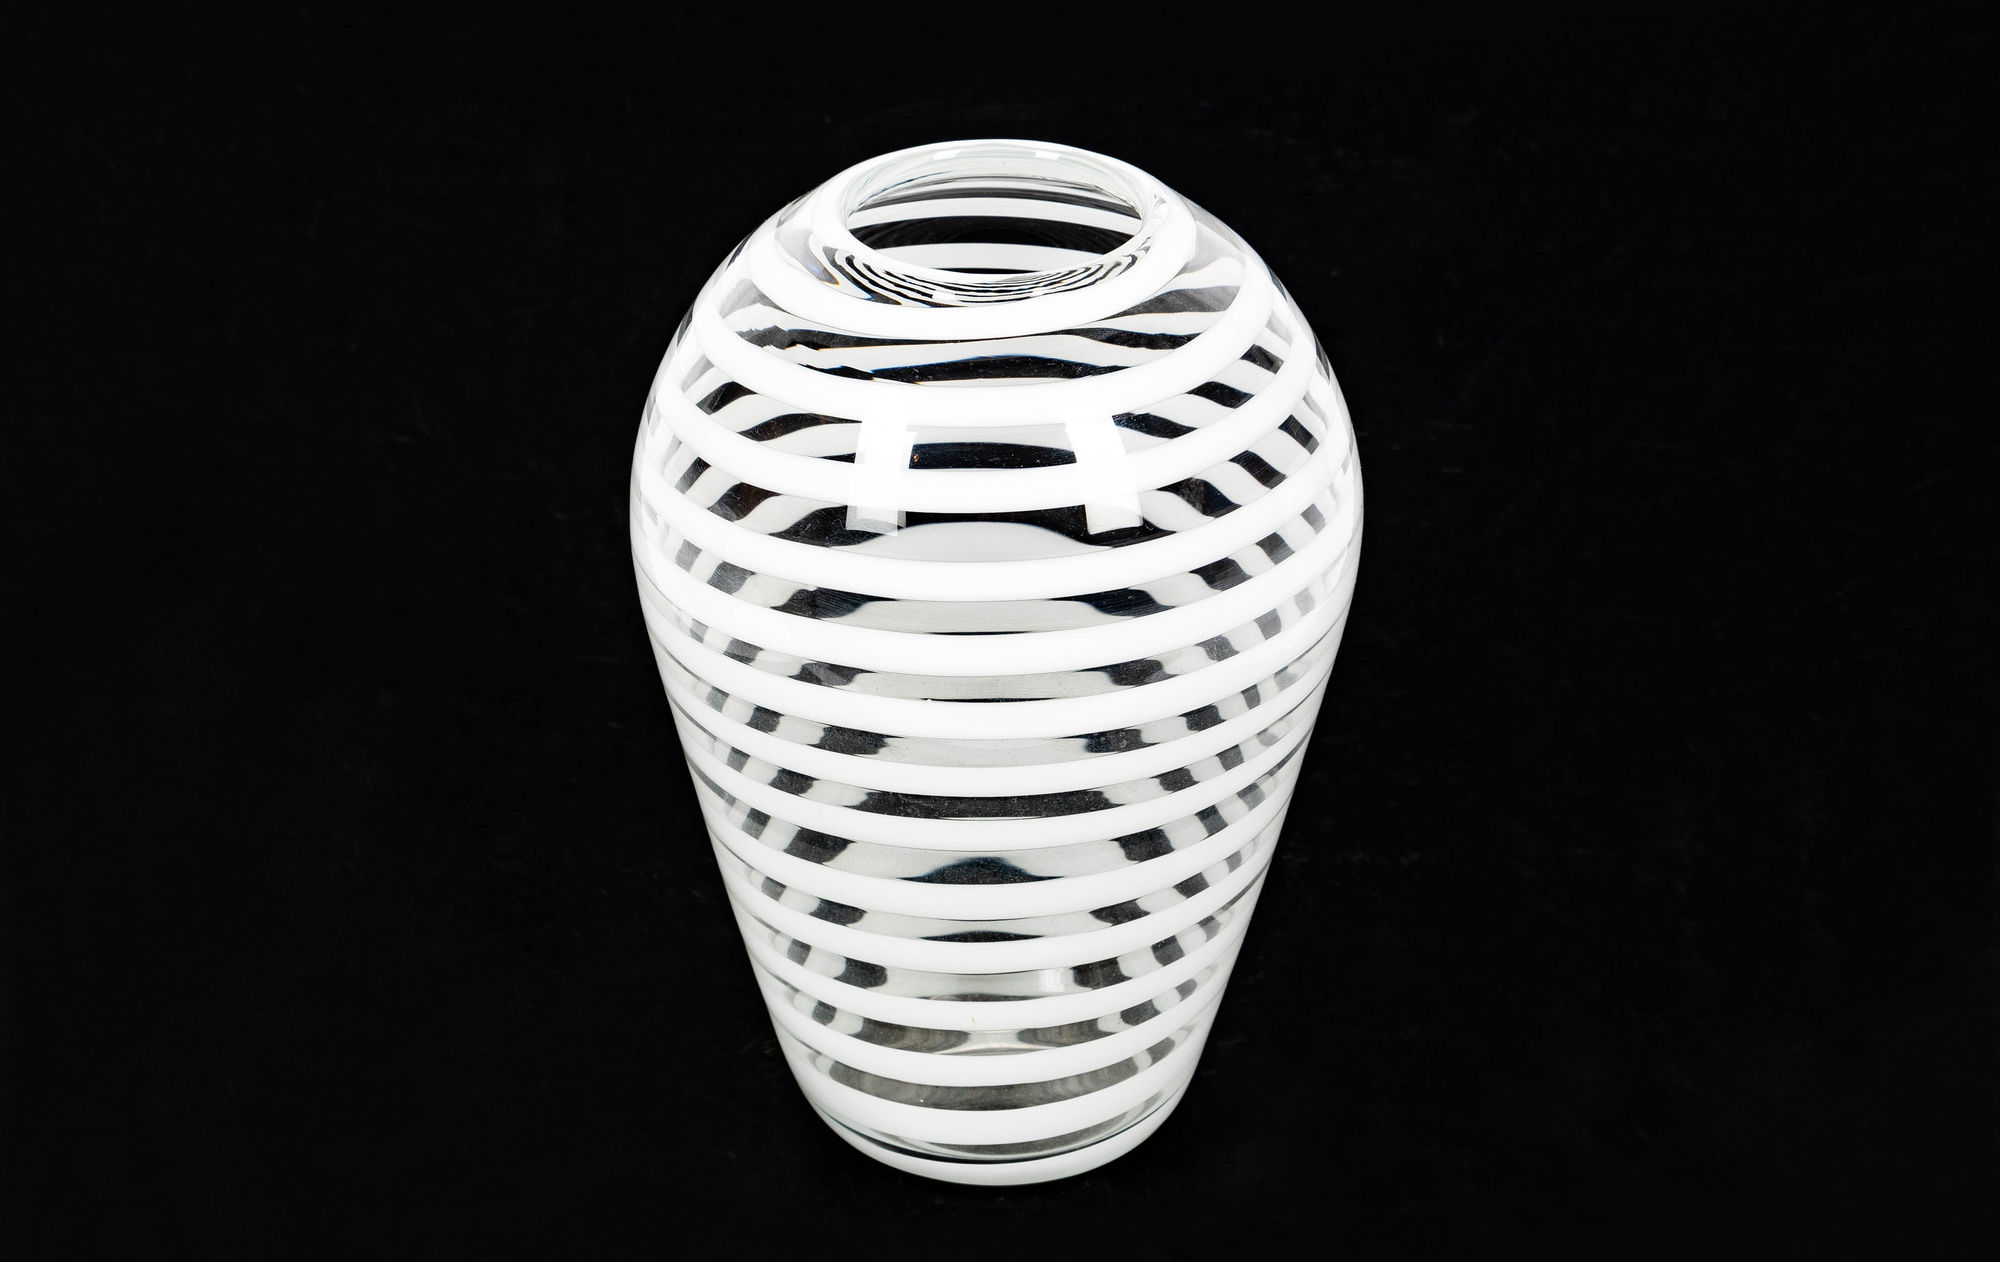 Carlo Scarpa Glass vase